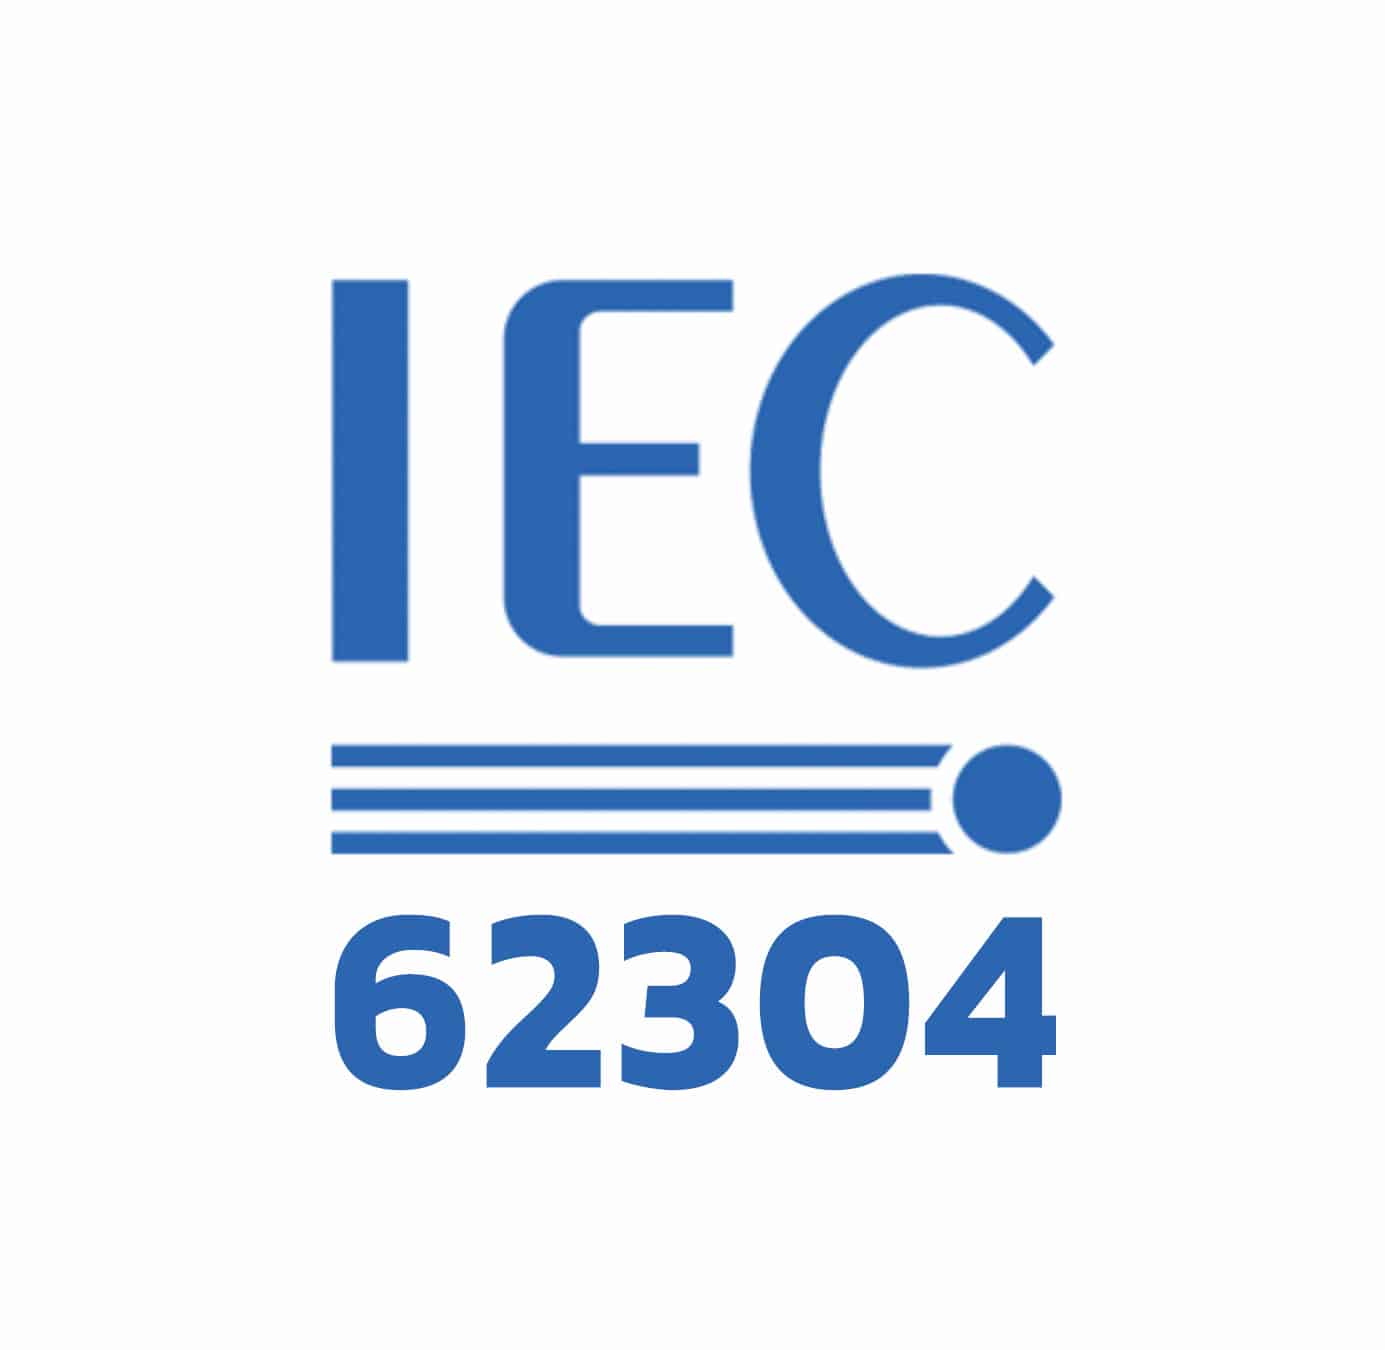 IEC-62304